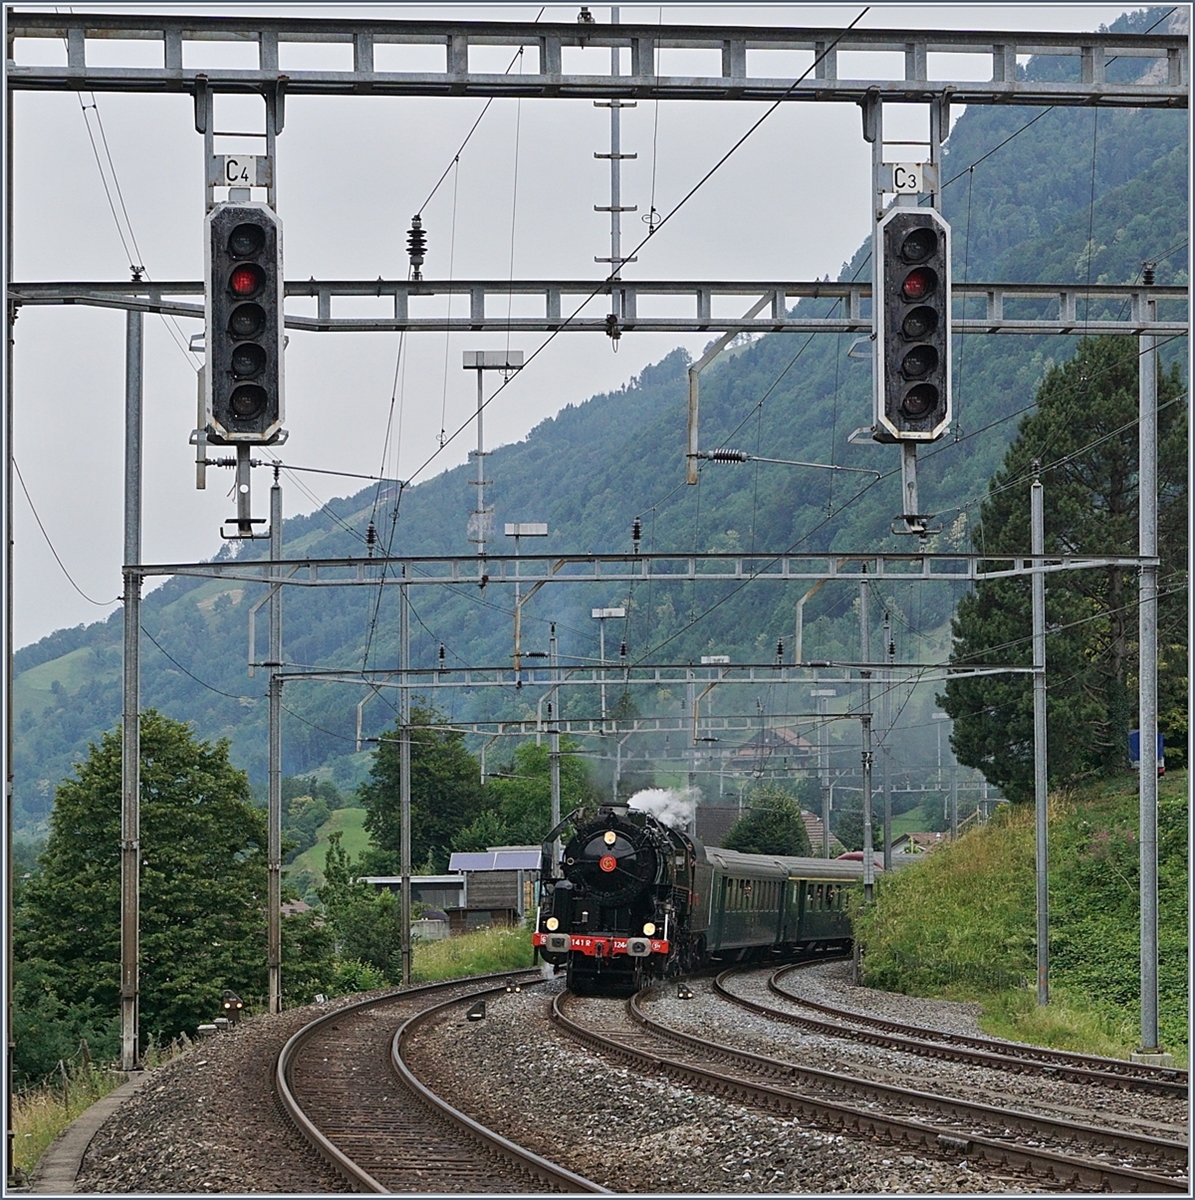 Die 141 R 1244 des  Vereins Mikado 1244  erreicht von Zürich kommend Arth Goldau. 
24. Juni 2018